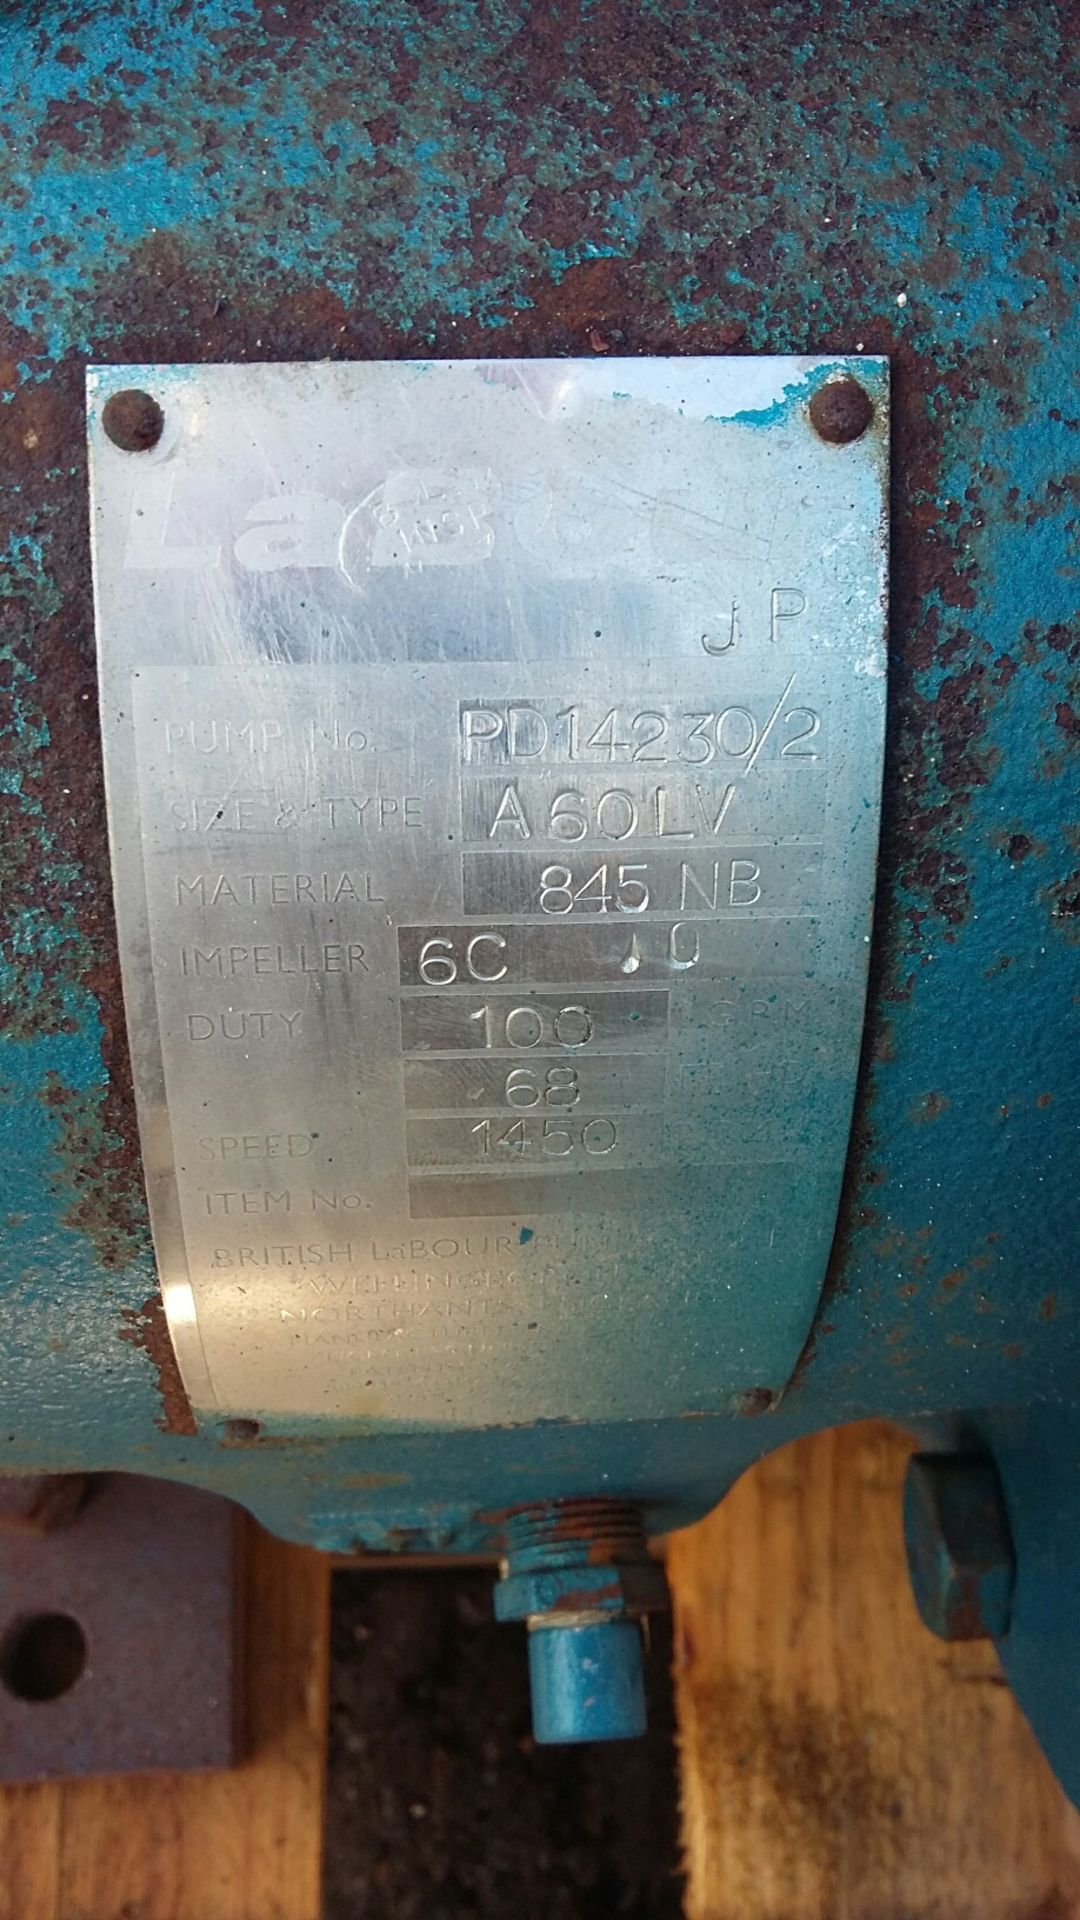 Labour A60LV Stainless Steel Bareshaft Pump - Bild 3 aus 3